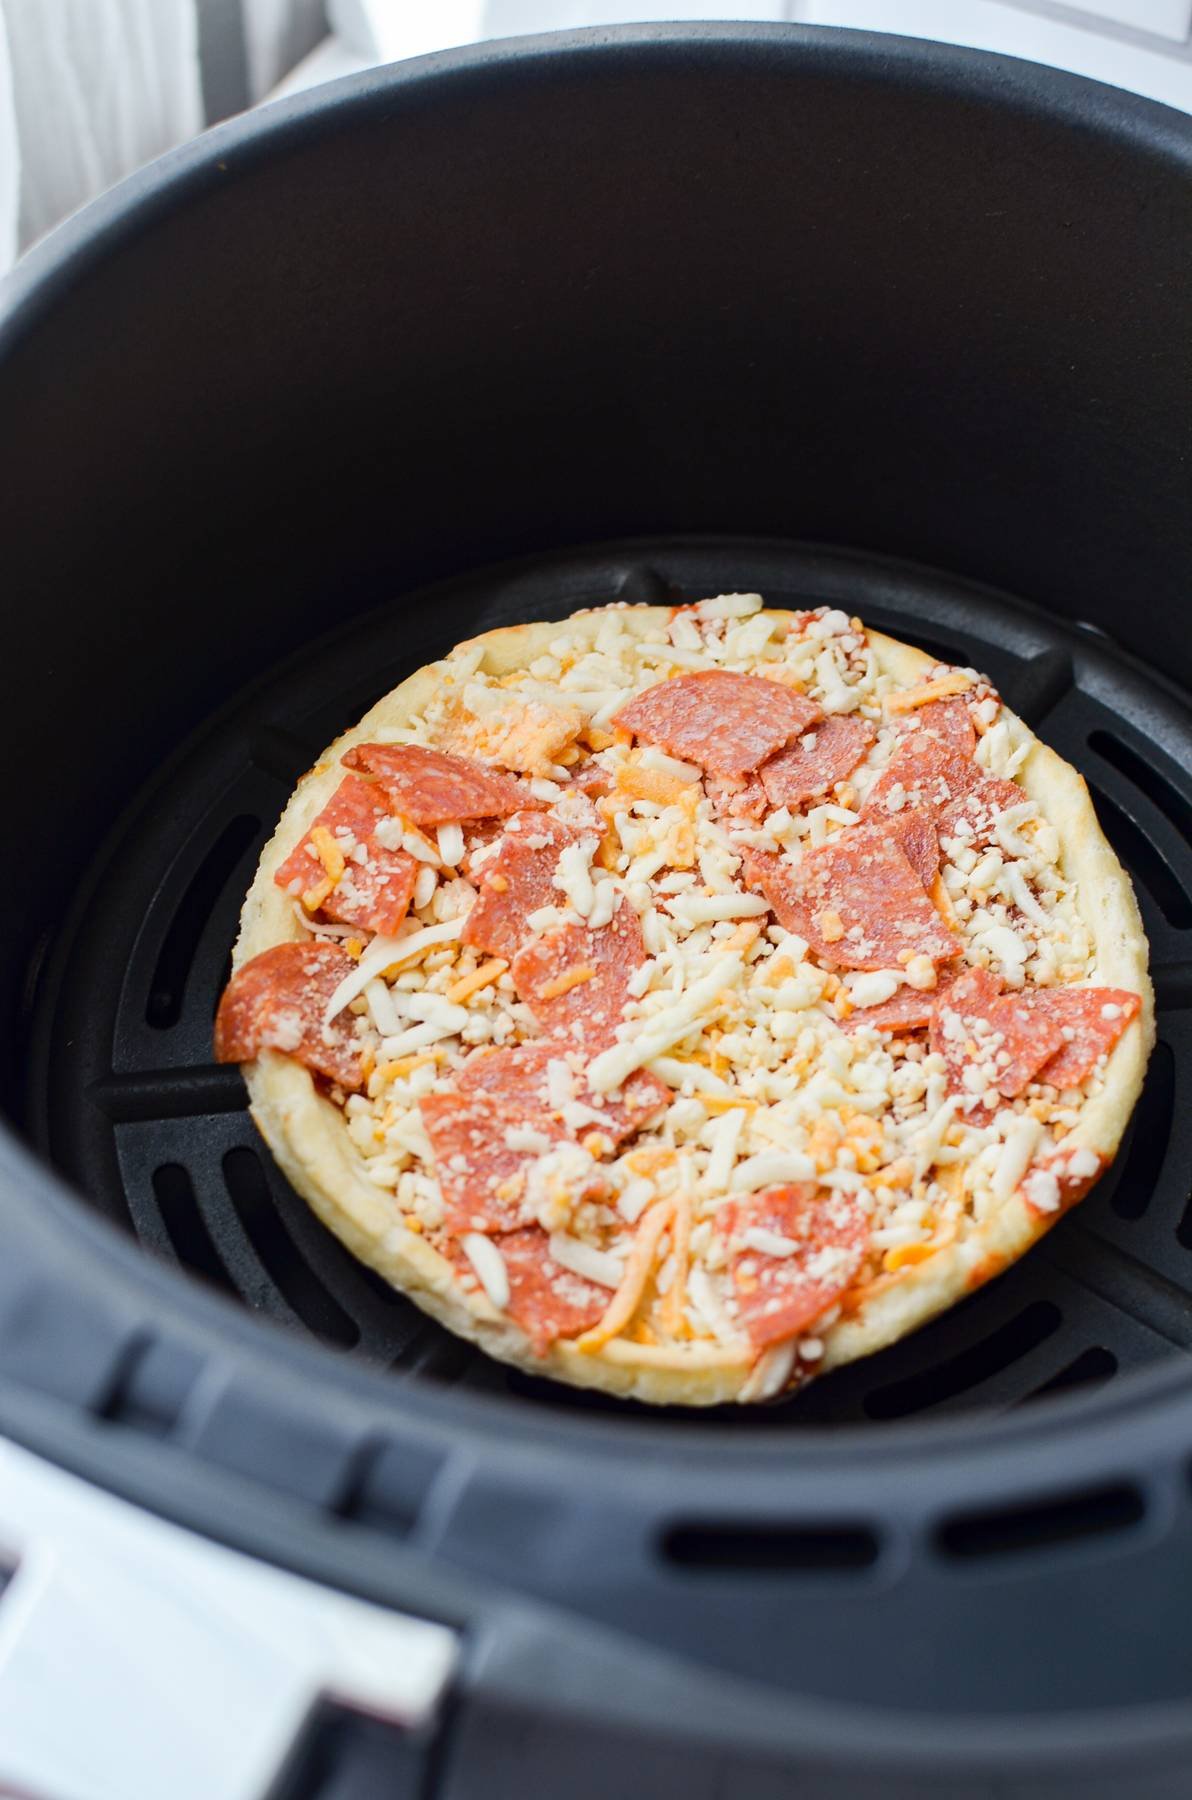 A frozen pizza in an air fryer basket.